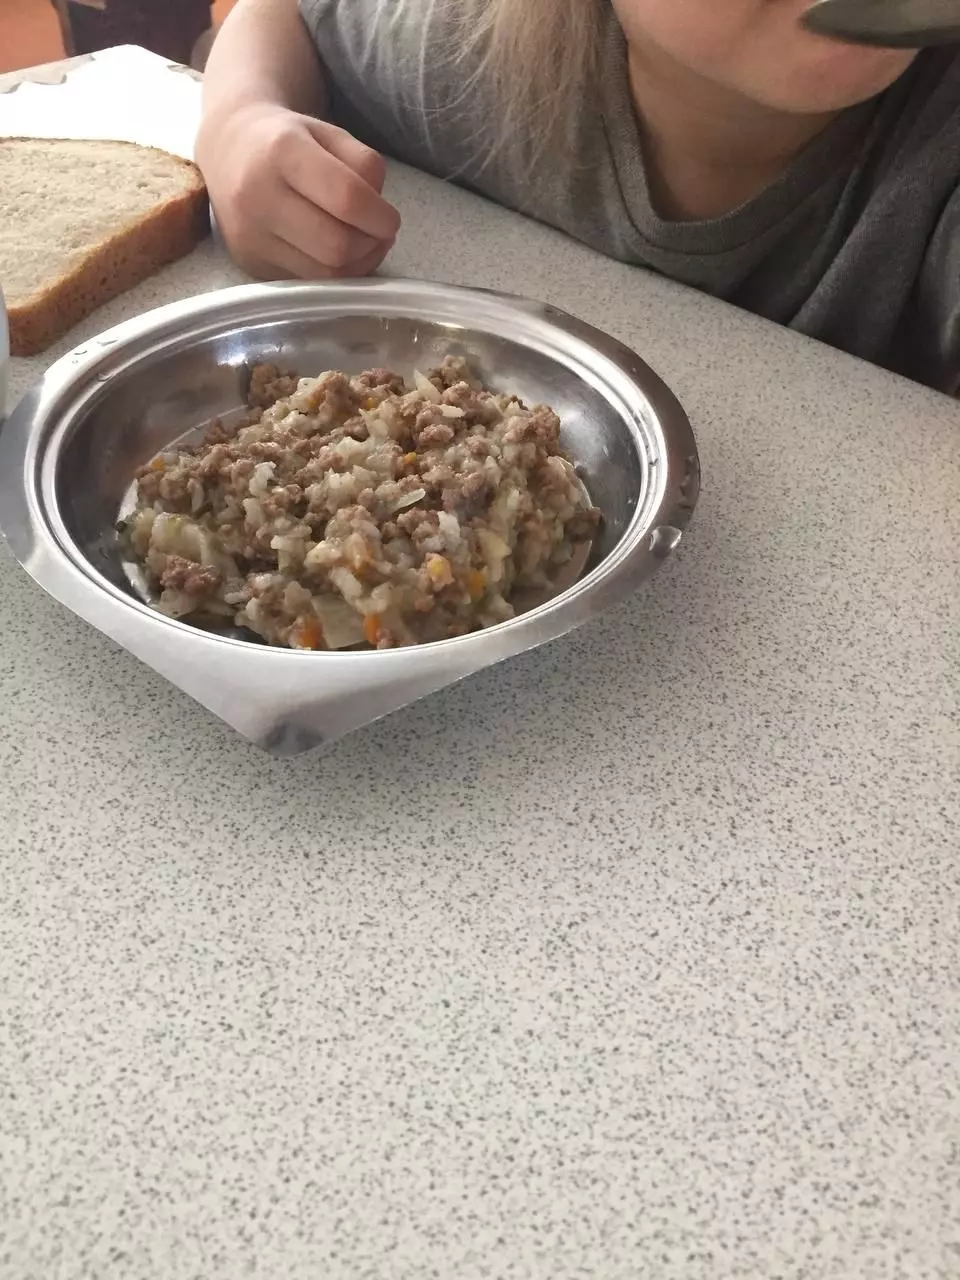 Детей в кировском детдоме кормили из ржавой железной посуды